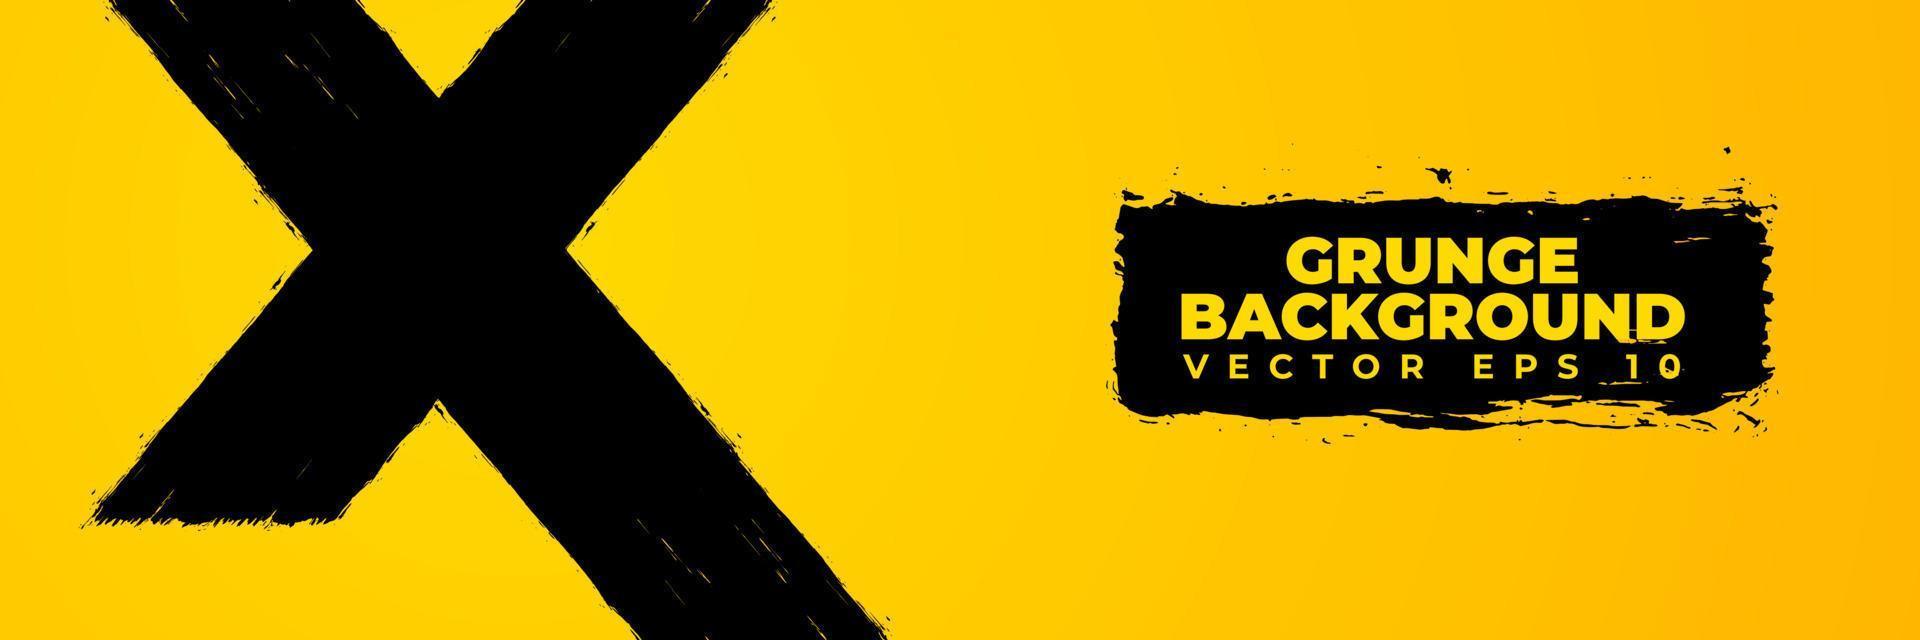 vetor abstrato de fundo grunge, design de banner do sistema de alerta, pano de fundo modelo com textura de pincel de tinta preta amarela